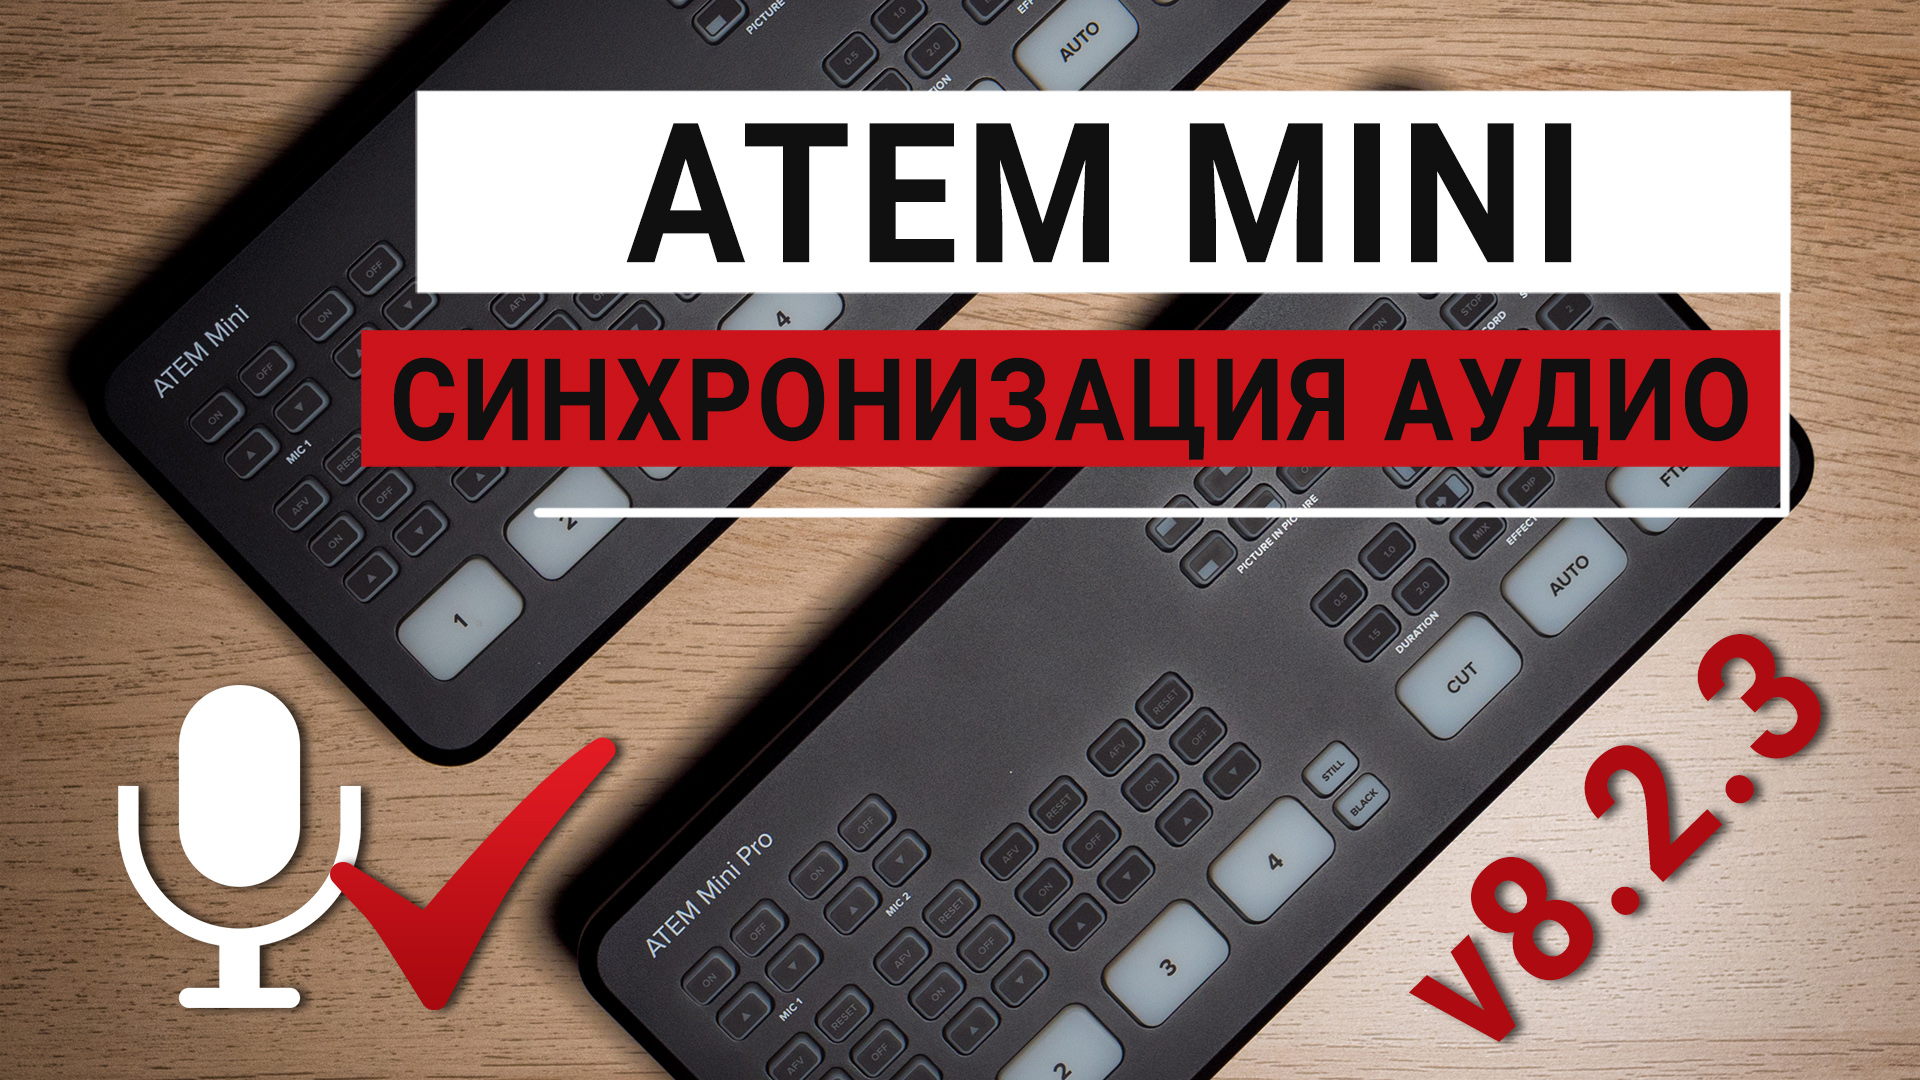 ATEM Mini v8.2.3. Решение проблемы синхронизации аудиовходов